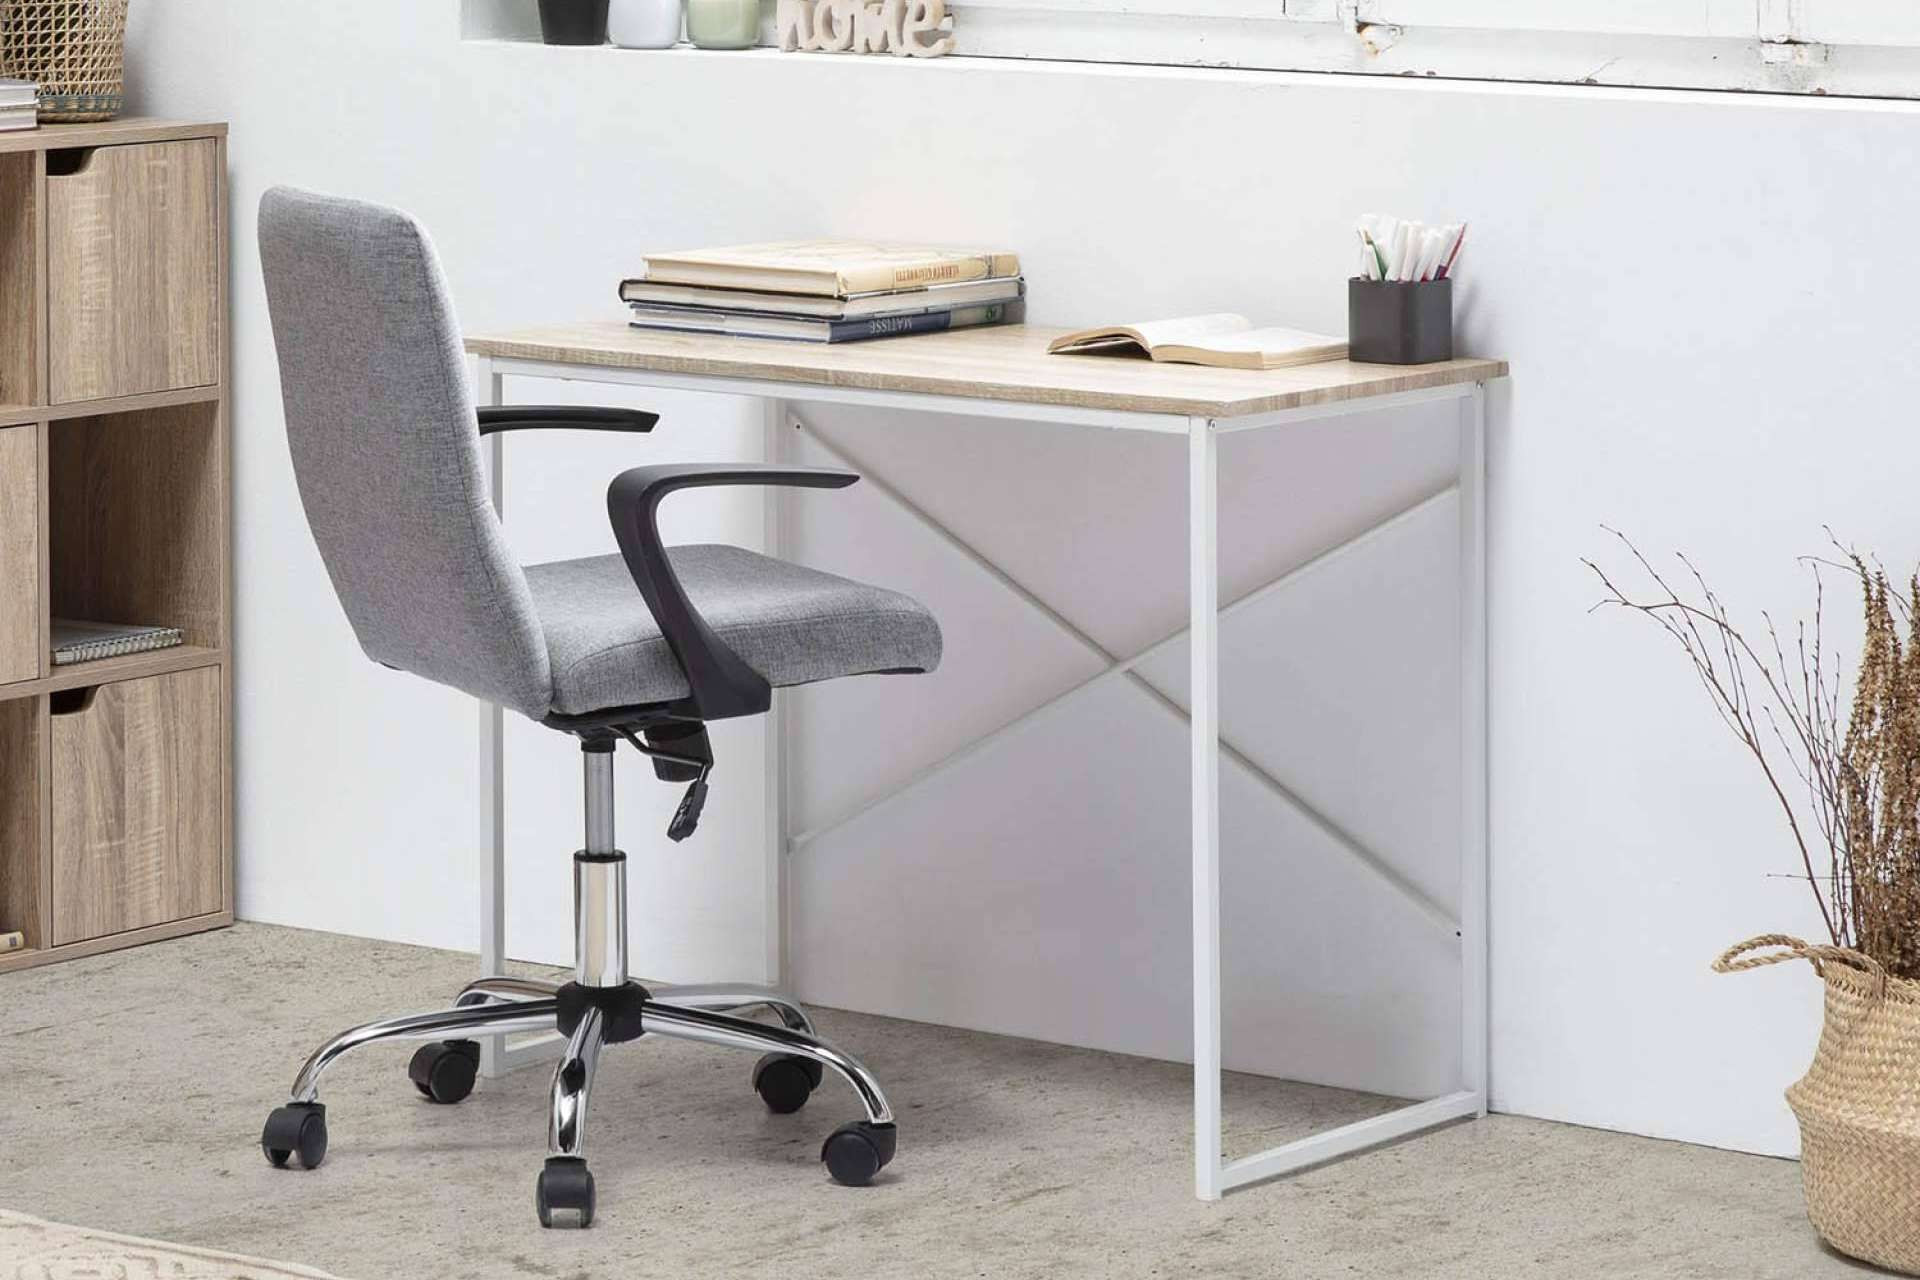  Las mesas y escritorios baratos de Top Mueble son ideales para teletrabajar 